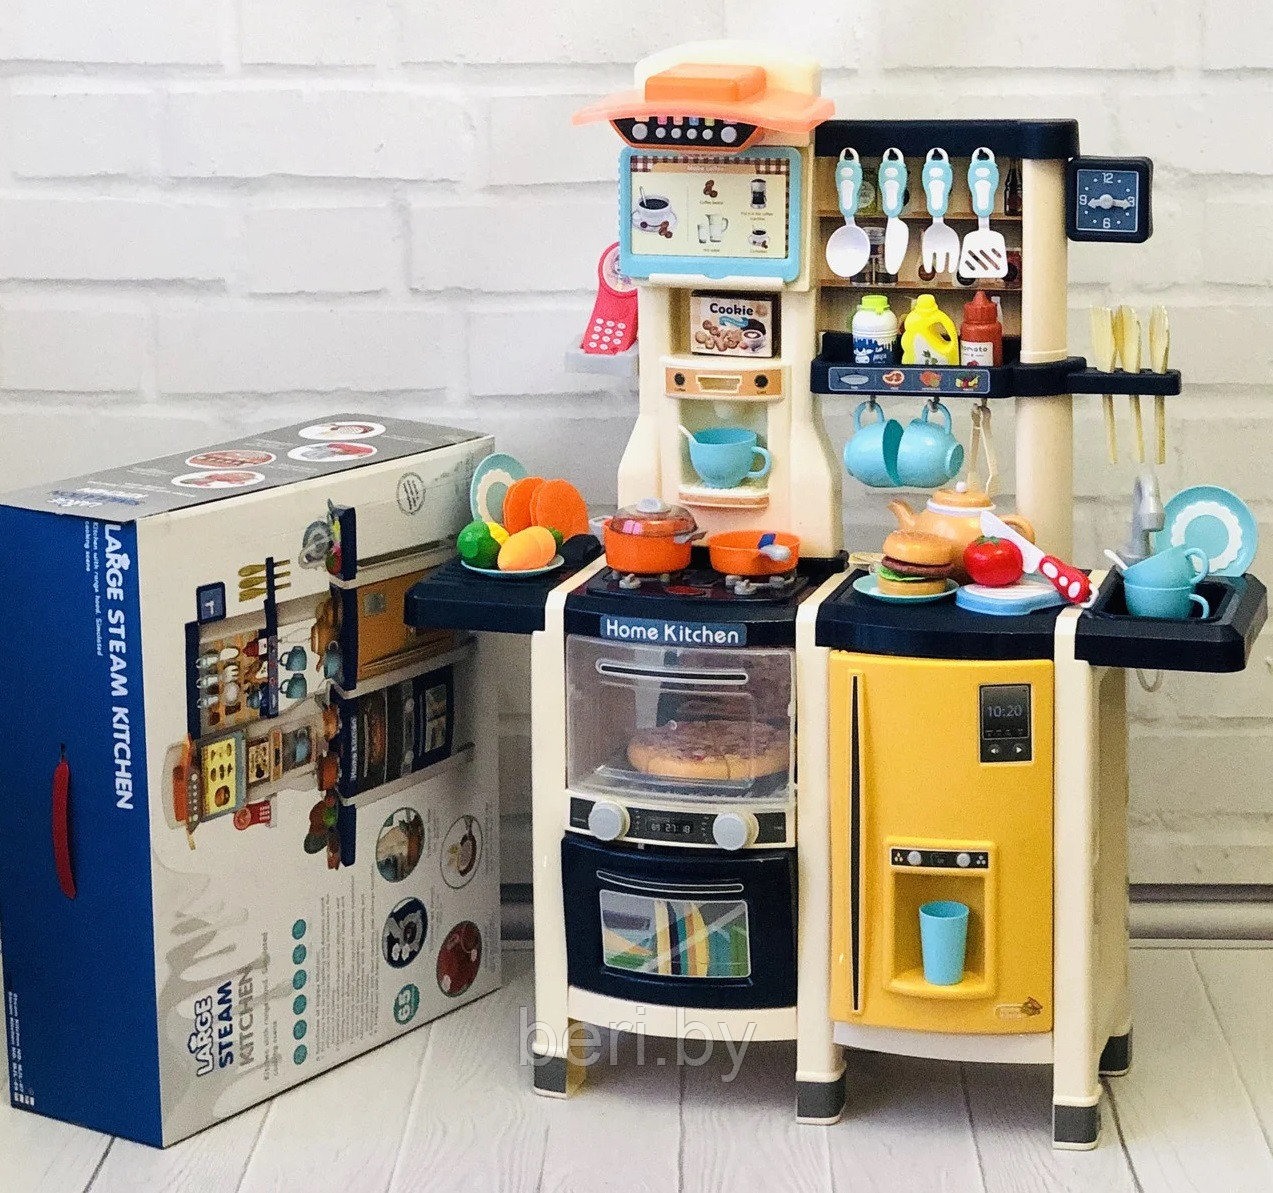 MJL-89 Кухня детская игровая, высота 100 см, вода, паром, звук, 65 предметов, синяя